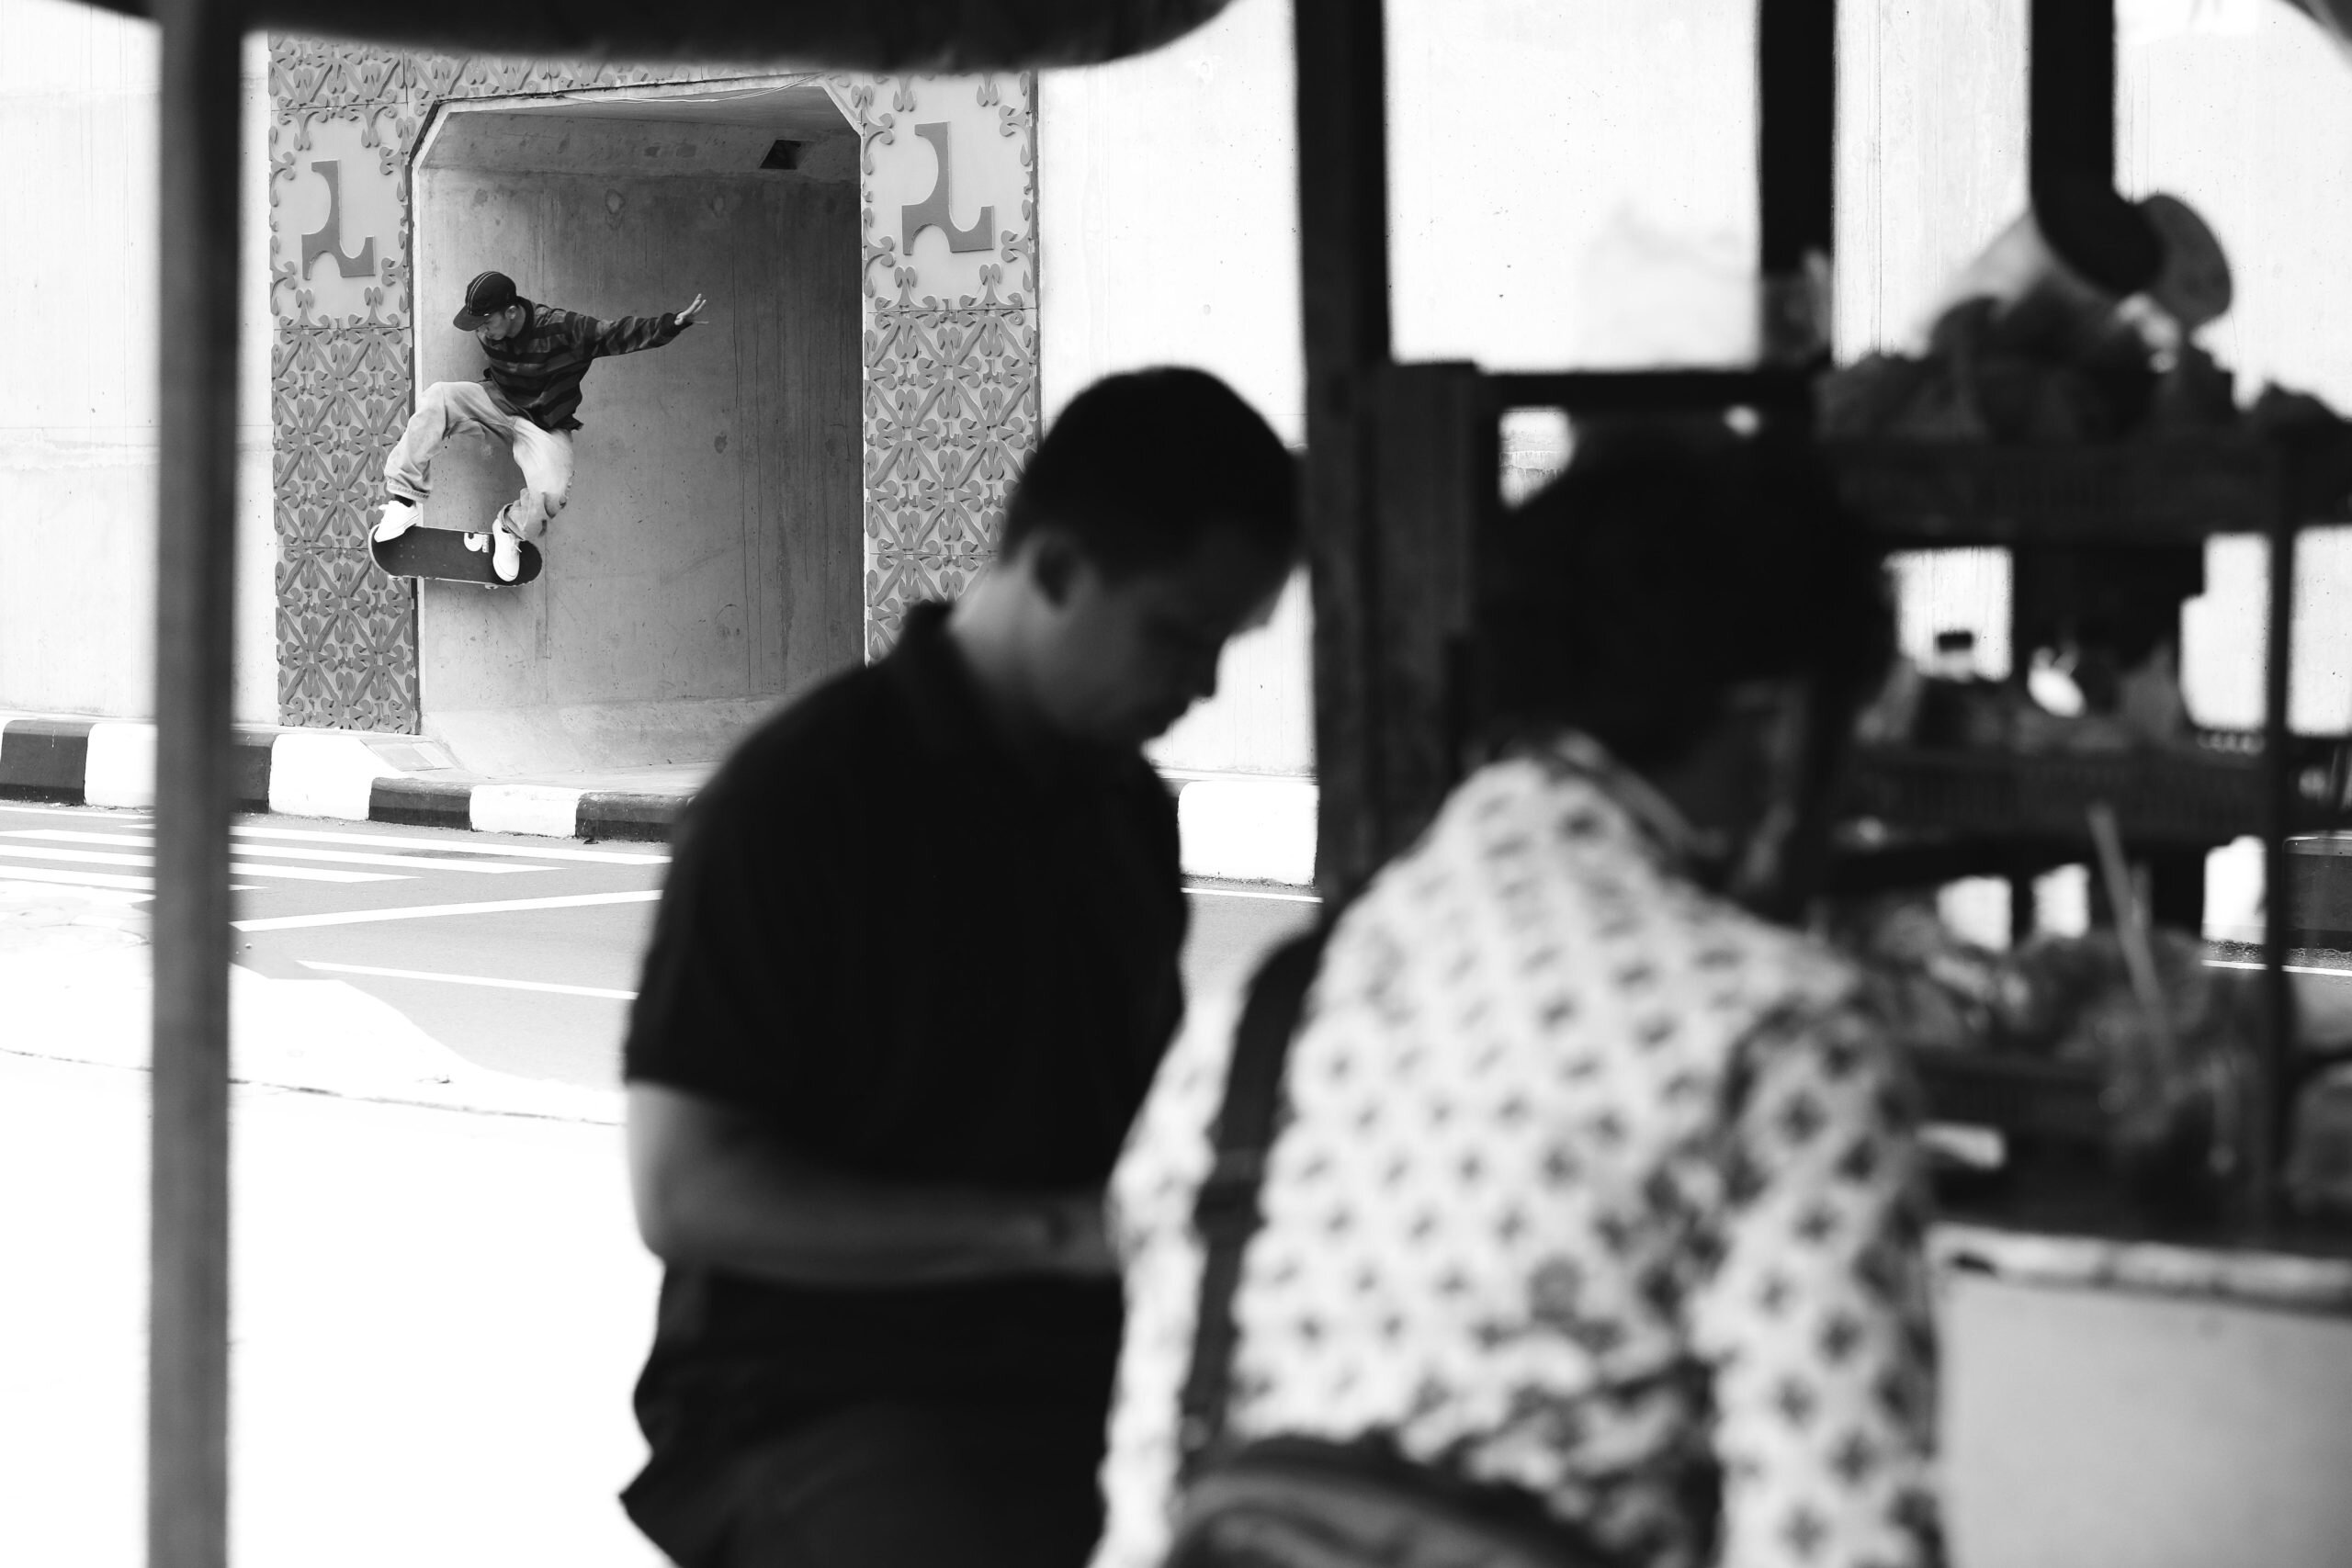 BackSide Skate Magazine. Photographers. Interview with Ismawadi Utomo, Indo Skate Photographer.